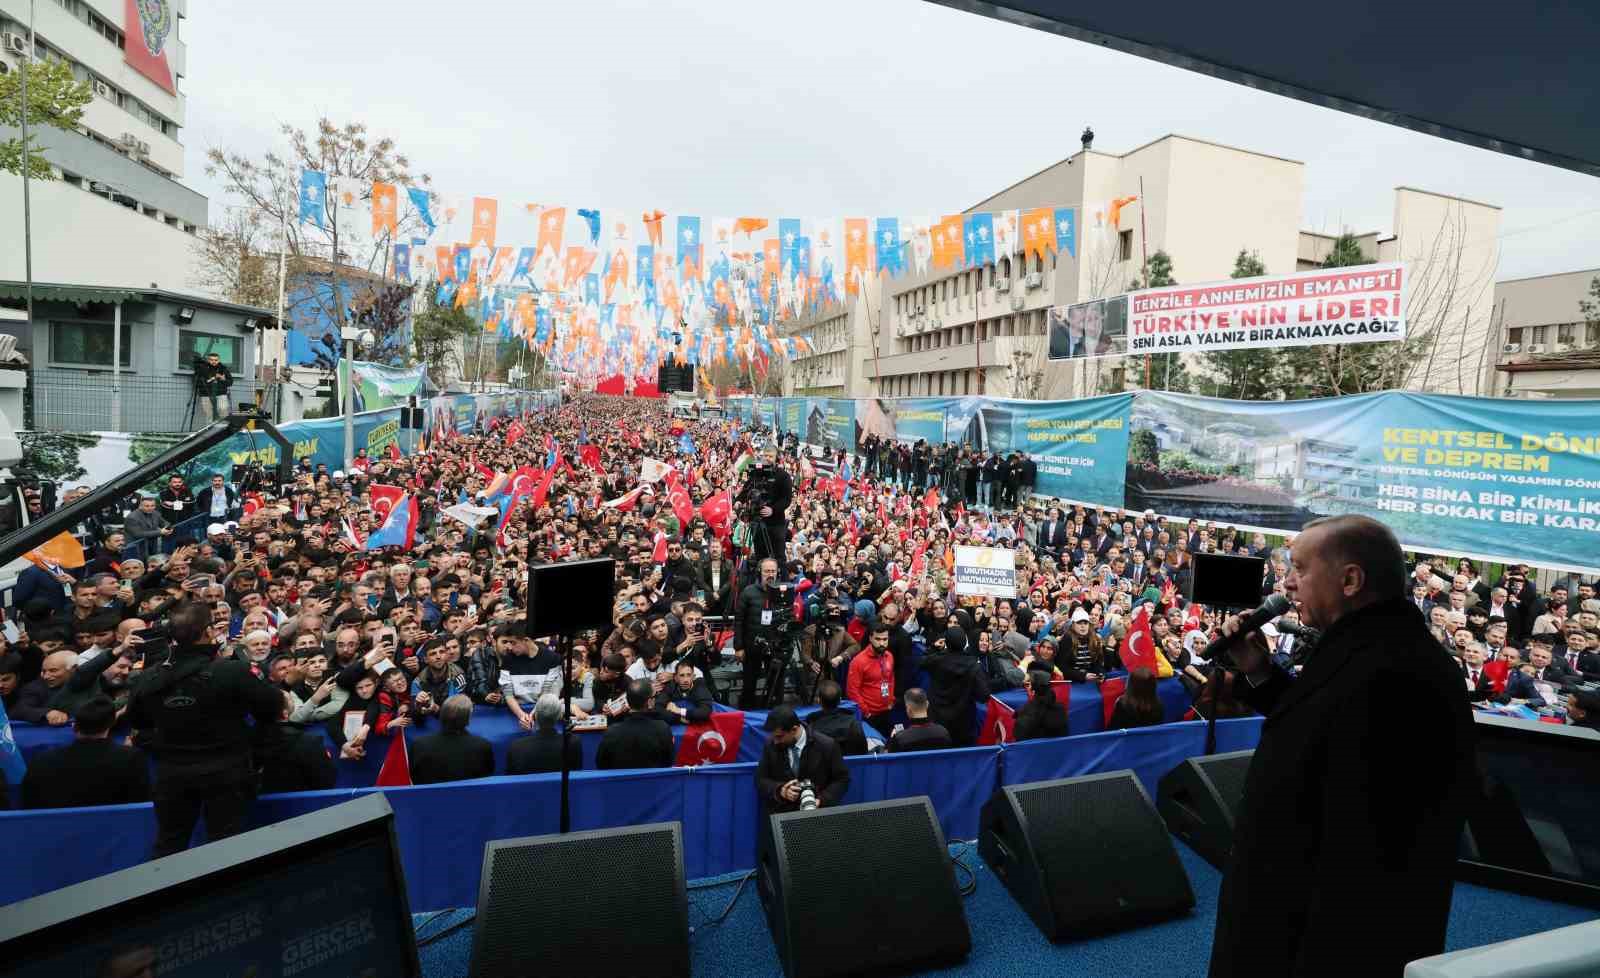 Cumhurbaşkanı Recep Tayyip Erdoğan: “Ekonomide güçlü bir kadro kurduk. Yılın ikinci yarısından itibaren uyguladığımız ekonomi programının olumlu yansımalarını daha net göreceğiz.”